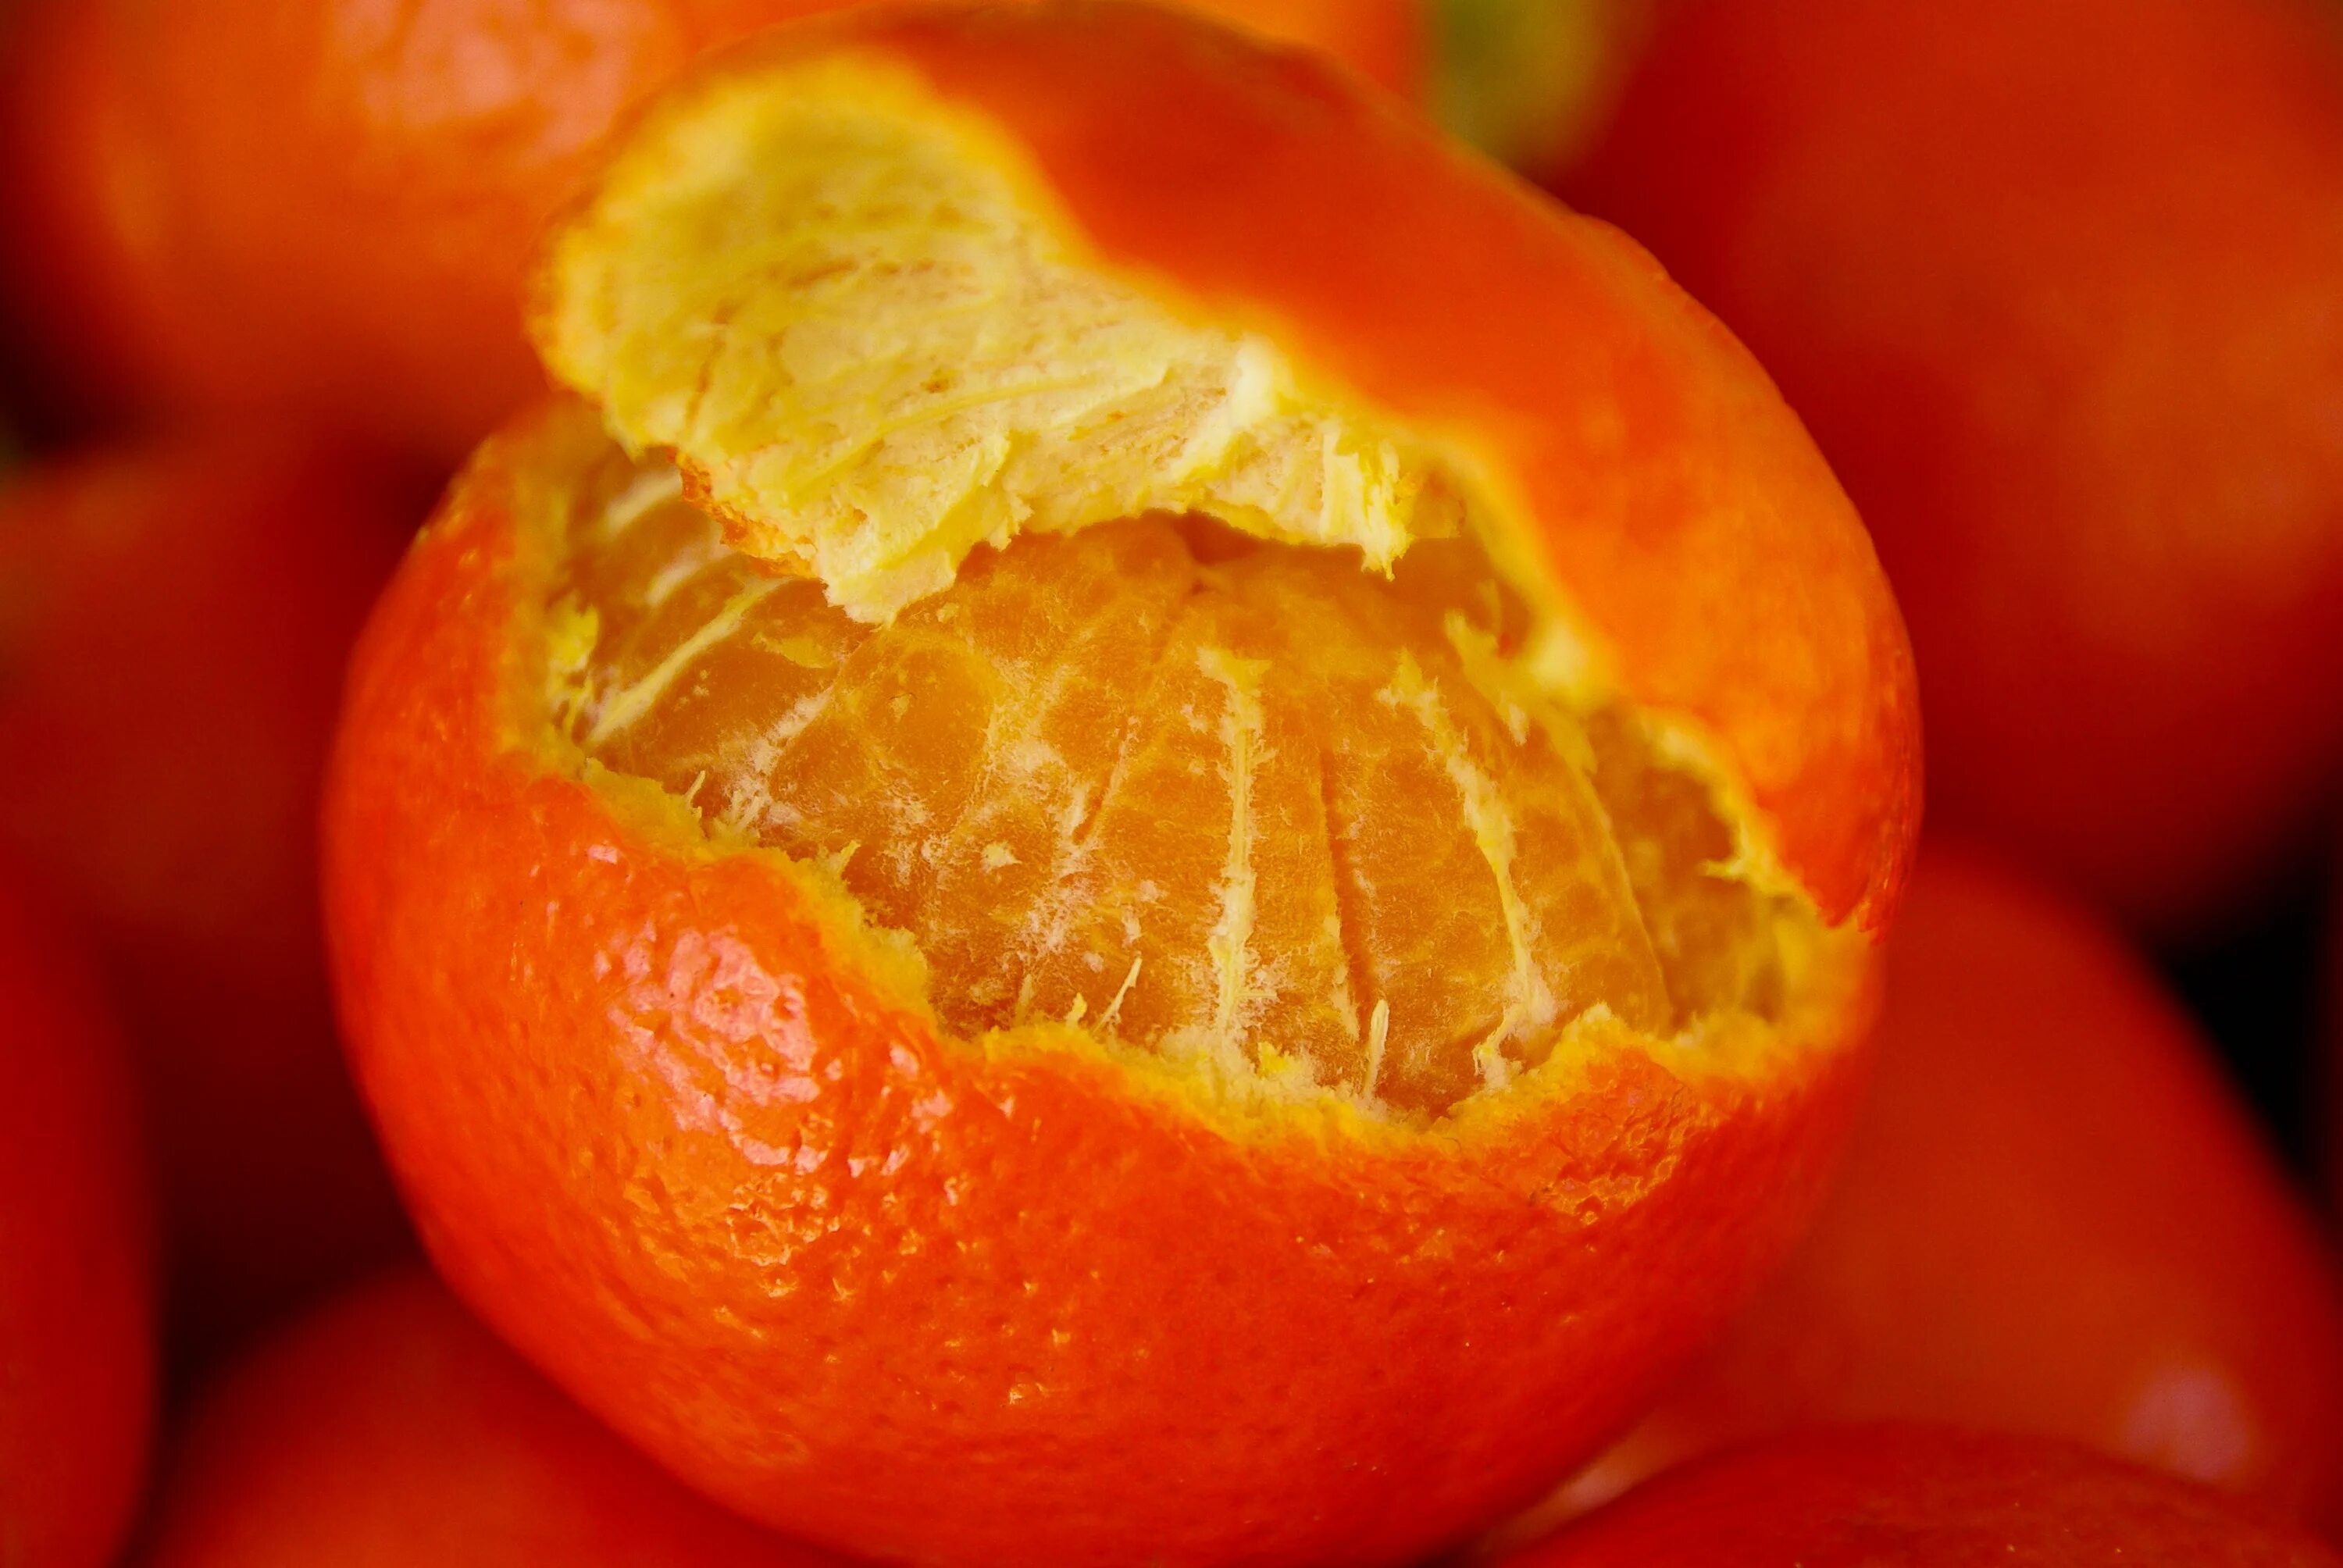 Orange vegetables. Померанец цвета оранж. Оранжевый фрукт коламбия. Цитрусовые фрукты хурма. Оранжевый цвет.